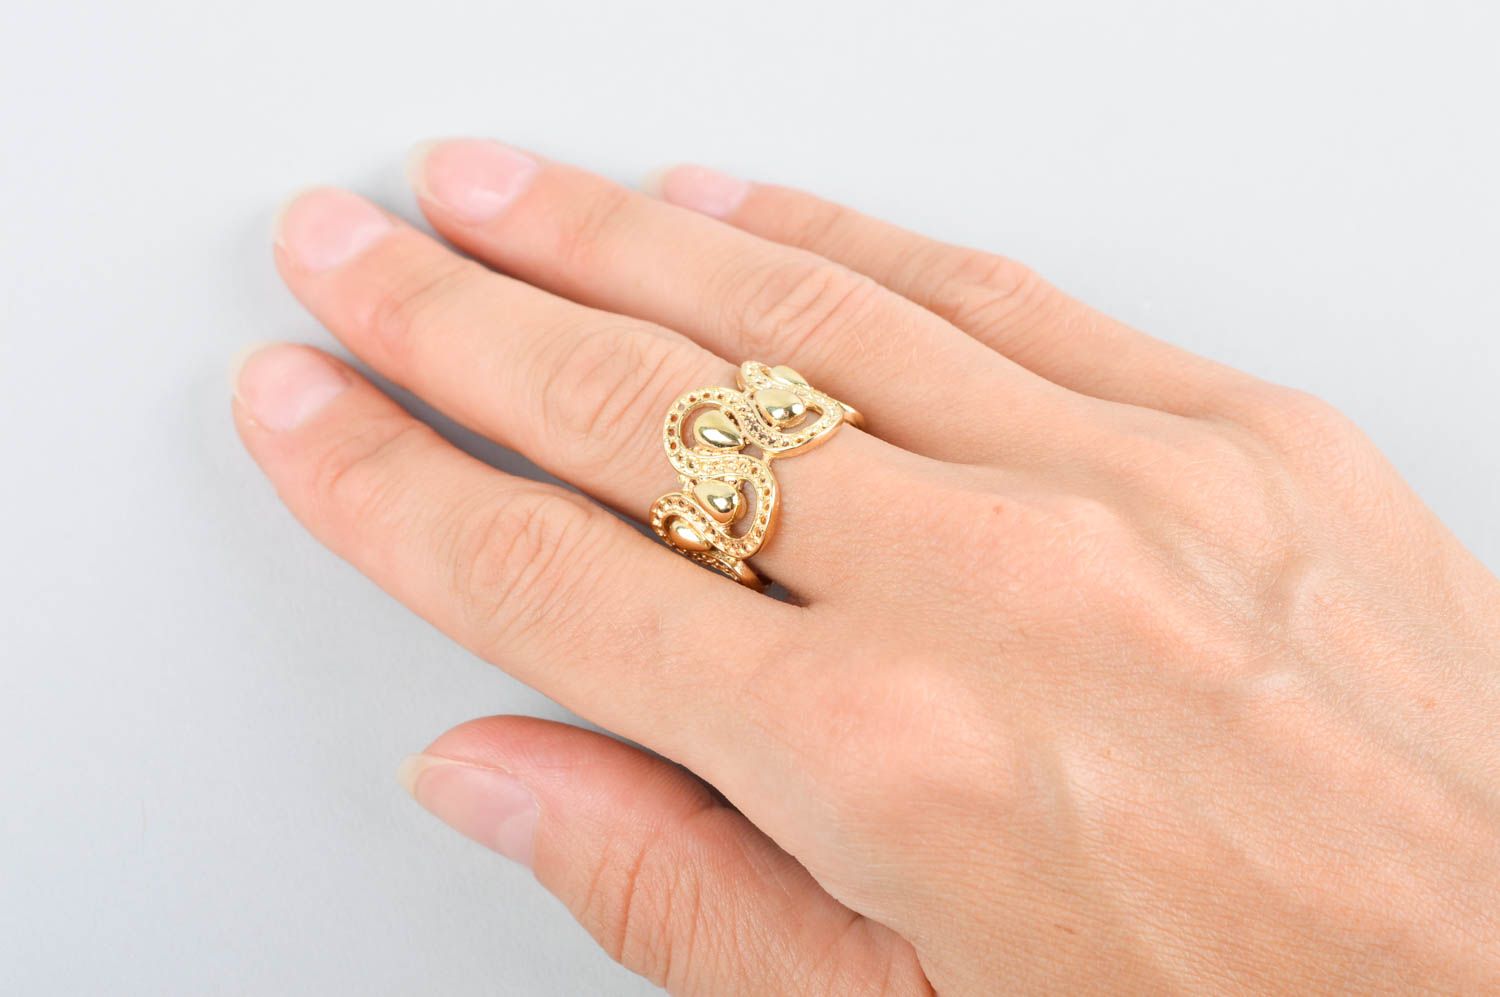 Кольцо ручной работы украшение из латуни изящное модное кольцо из металла фото 4